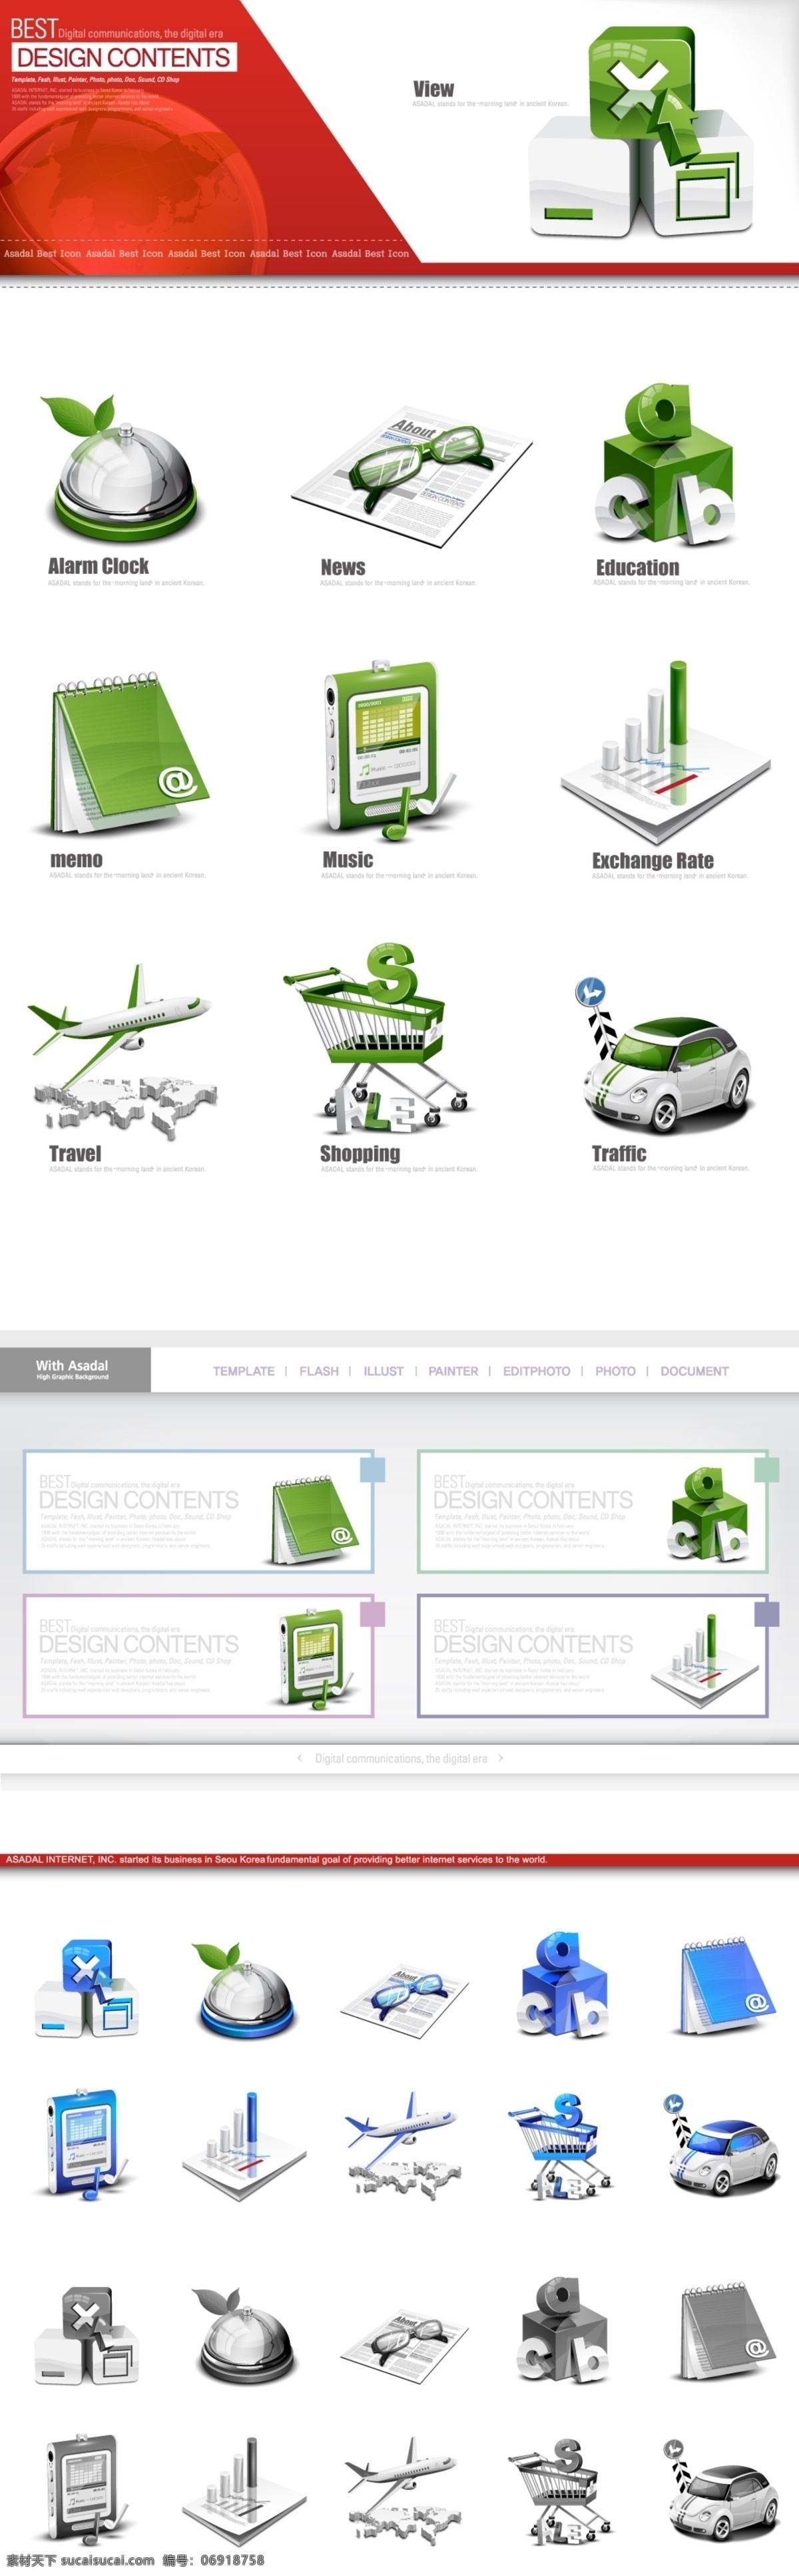 信号 帮助 快餐 网页 图标 ico 蓝色 绿色 网页素材 网页图标 网页模板